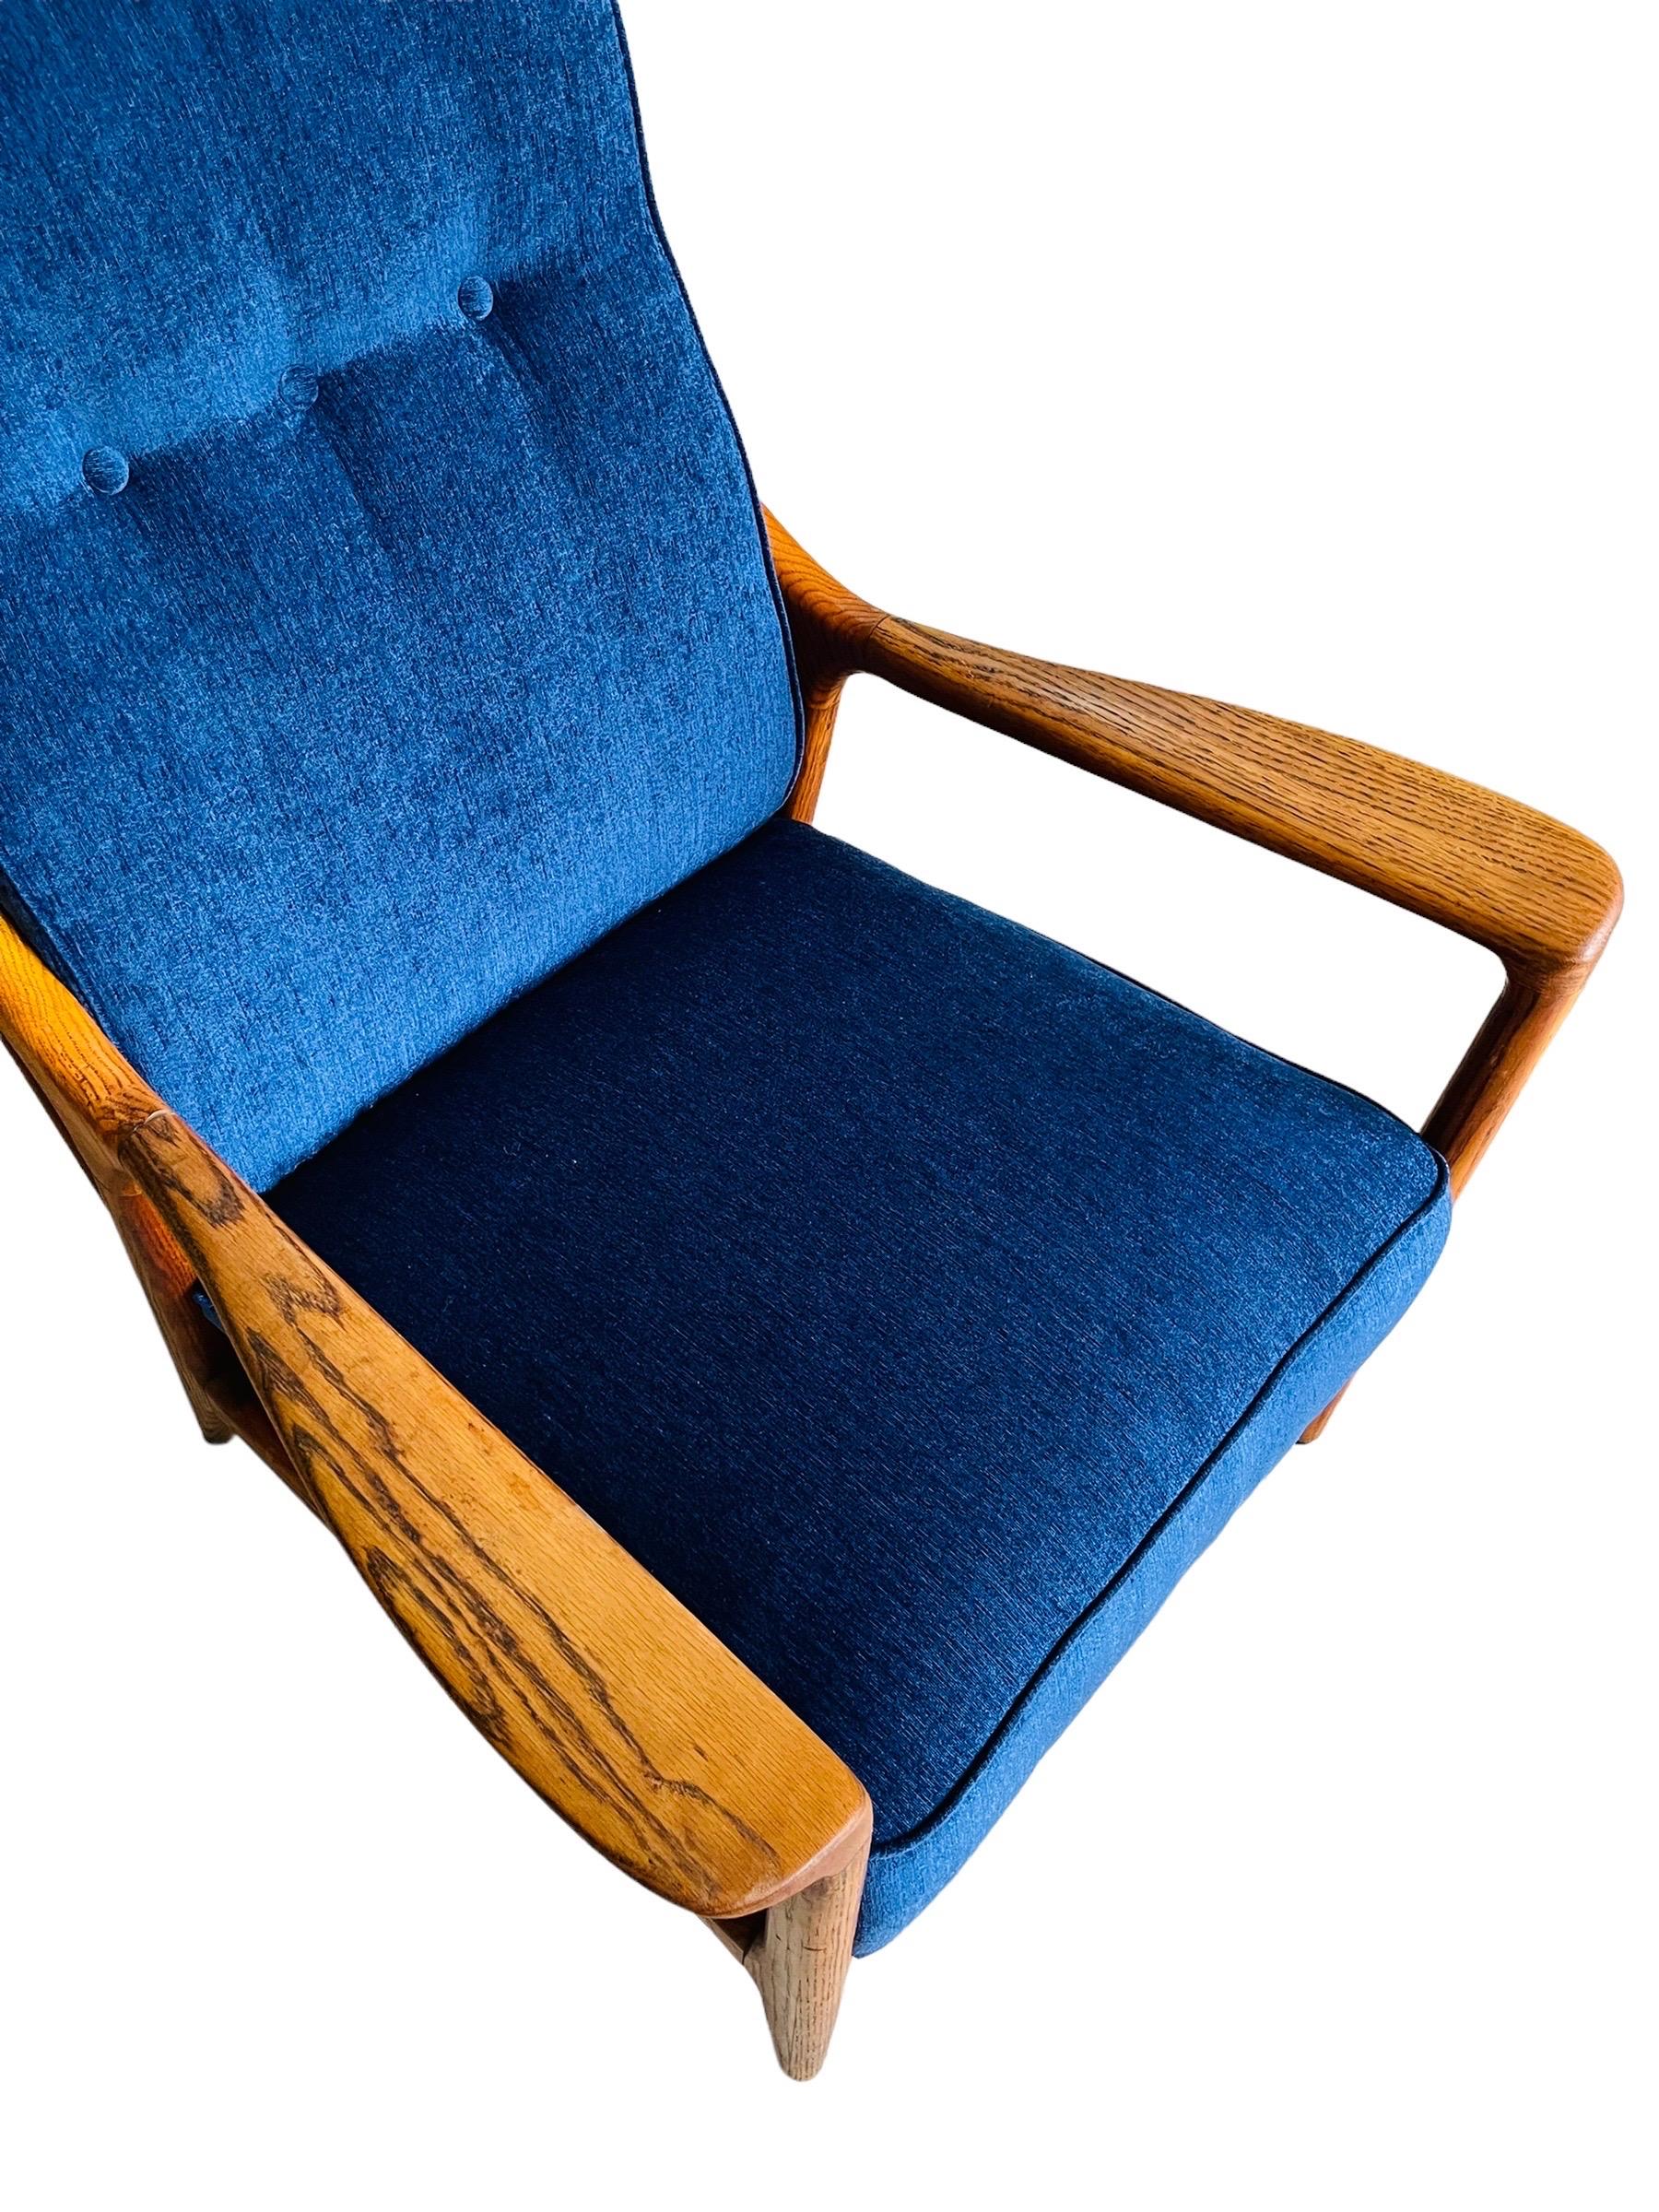 20th Century Mid-Century Modern Oak Lounge Chair by Jack Van Der Molen